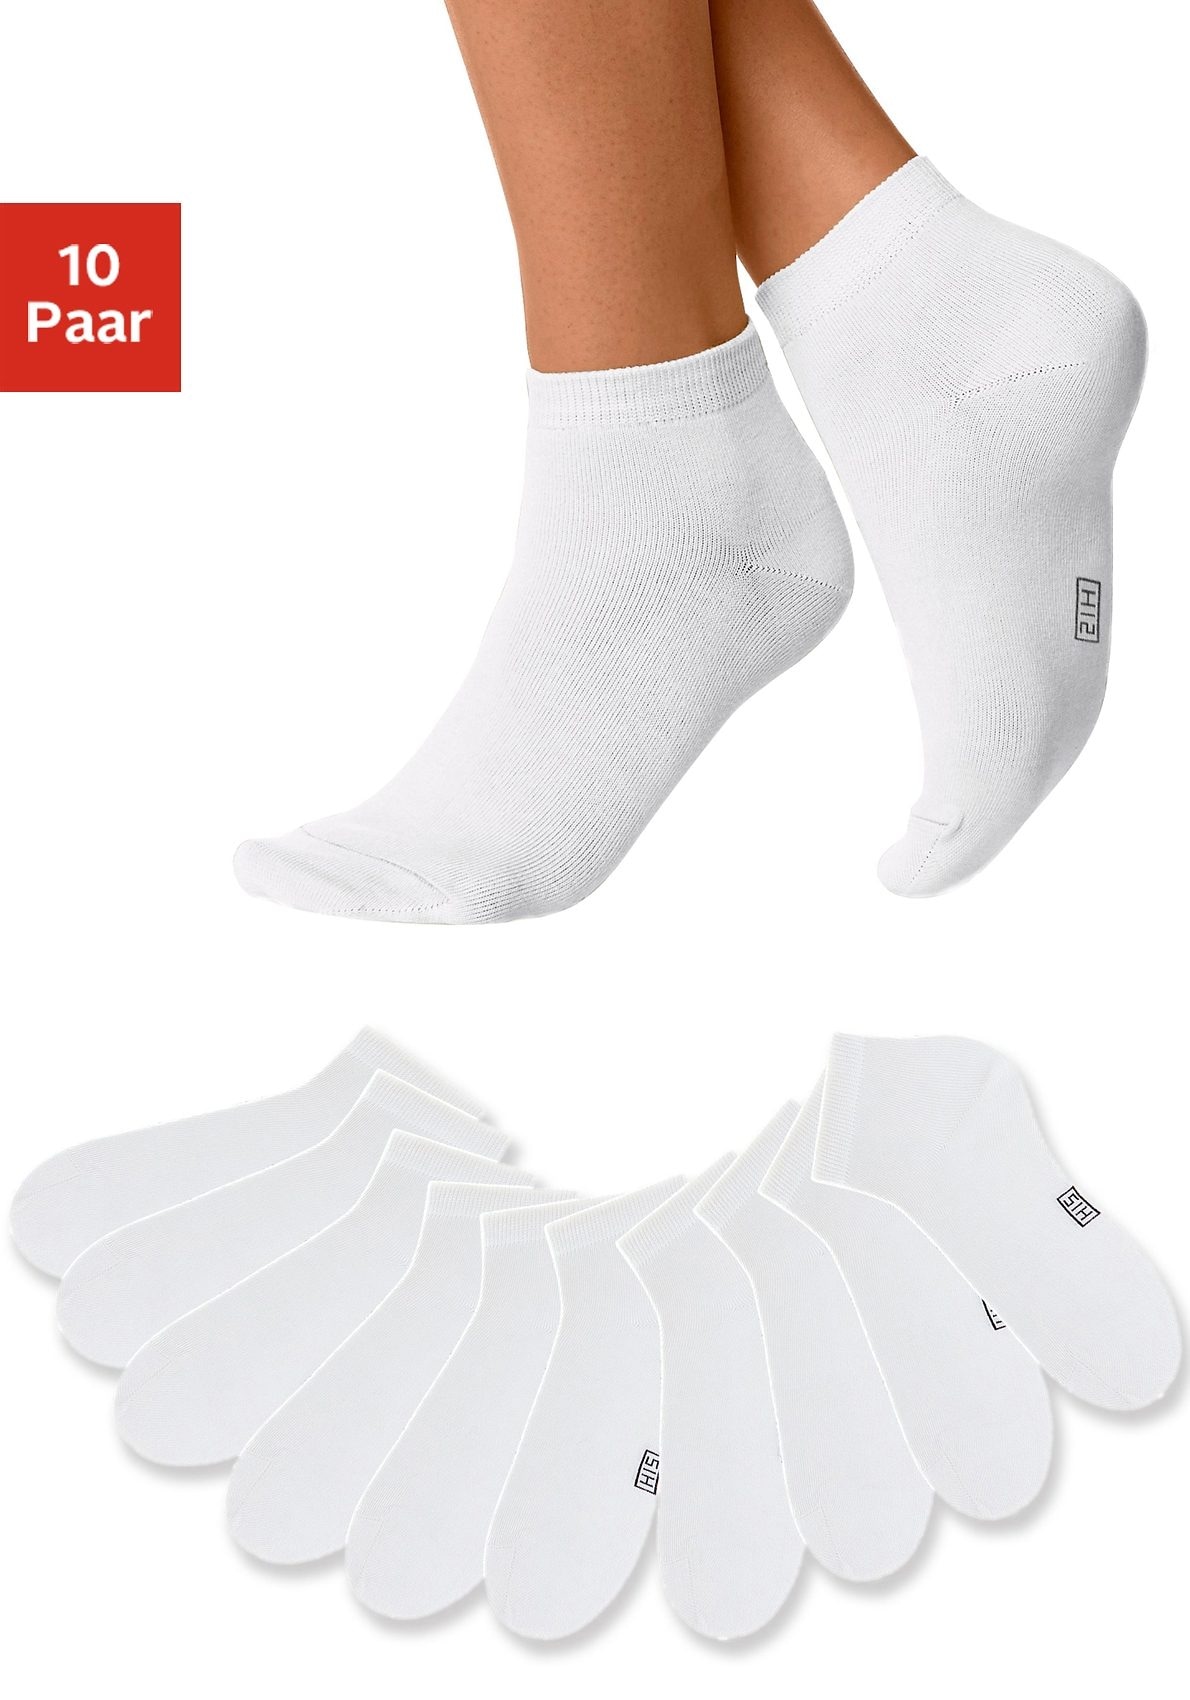 Weisse Socken jetzt online kaufen